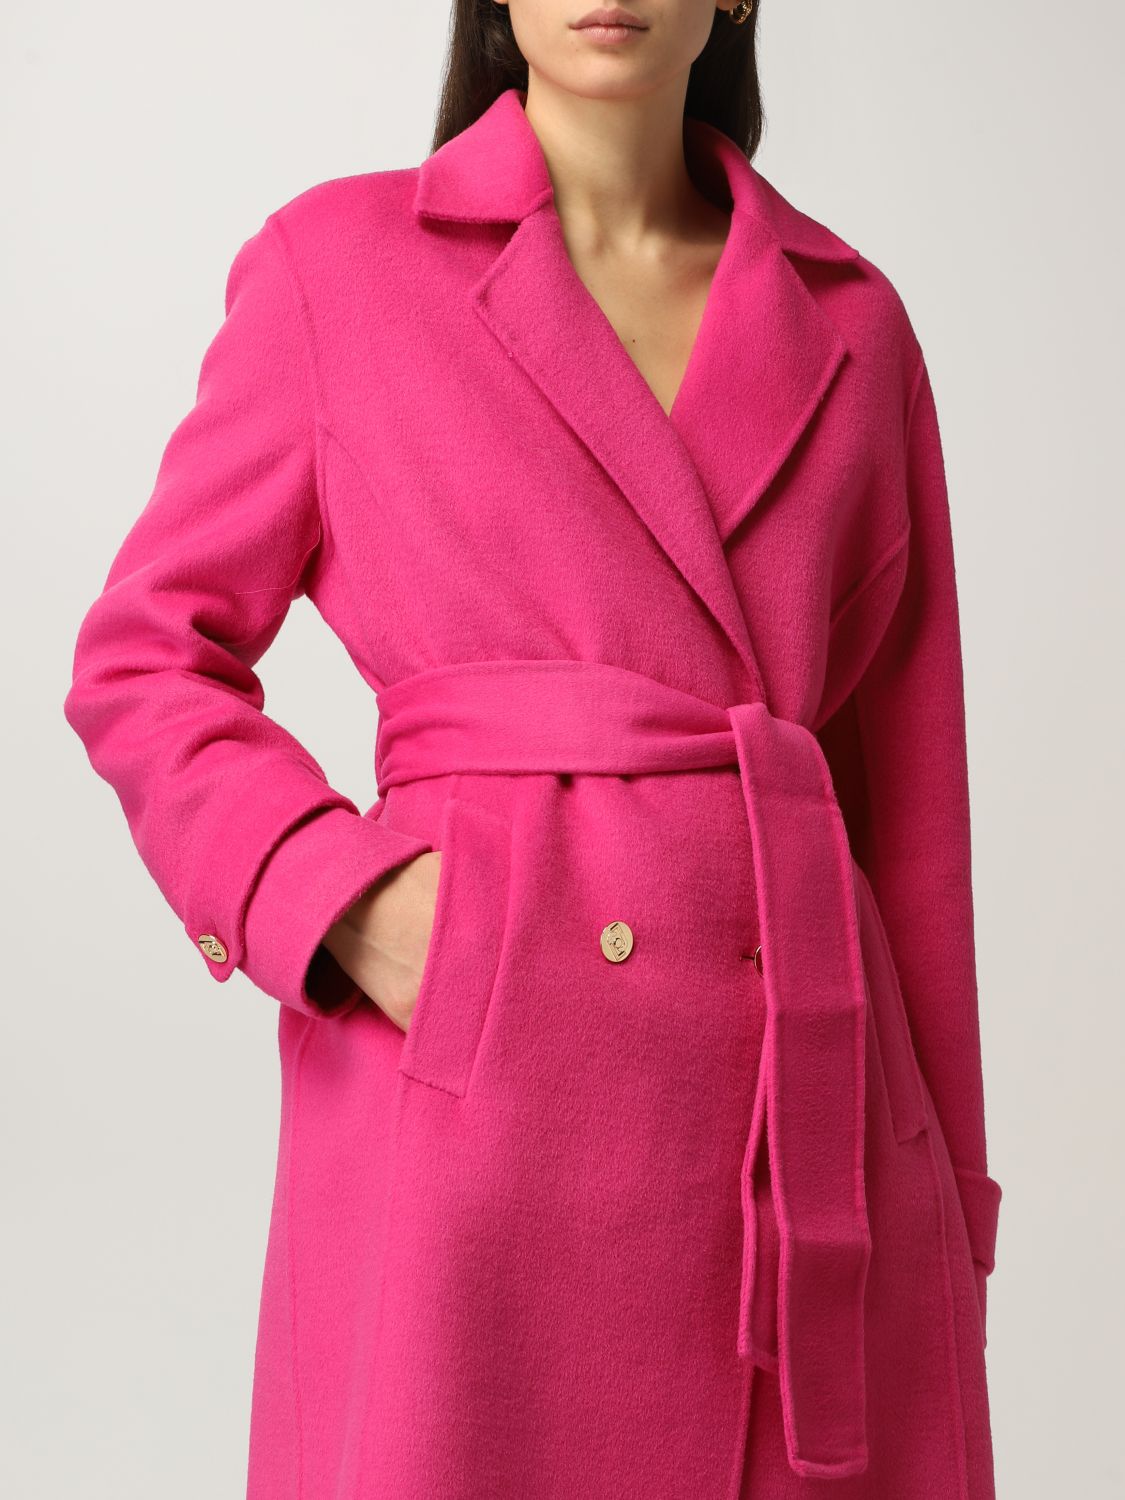 Liu Jo double-breasted coat in wool blend